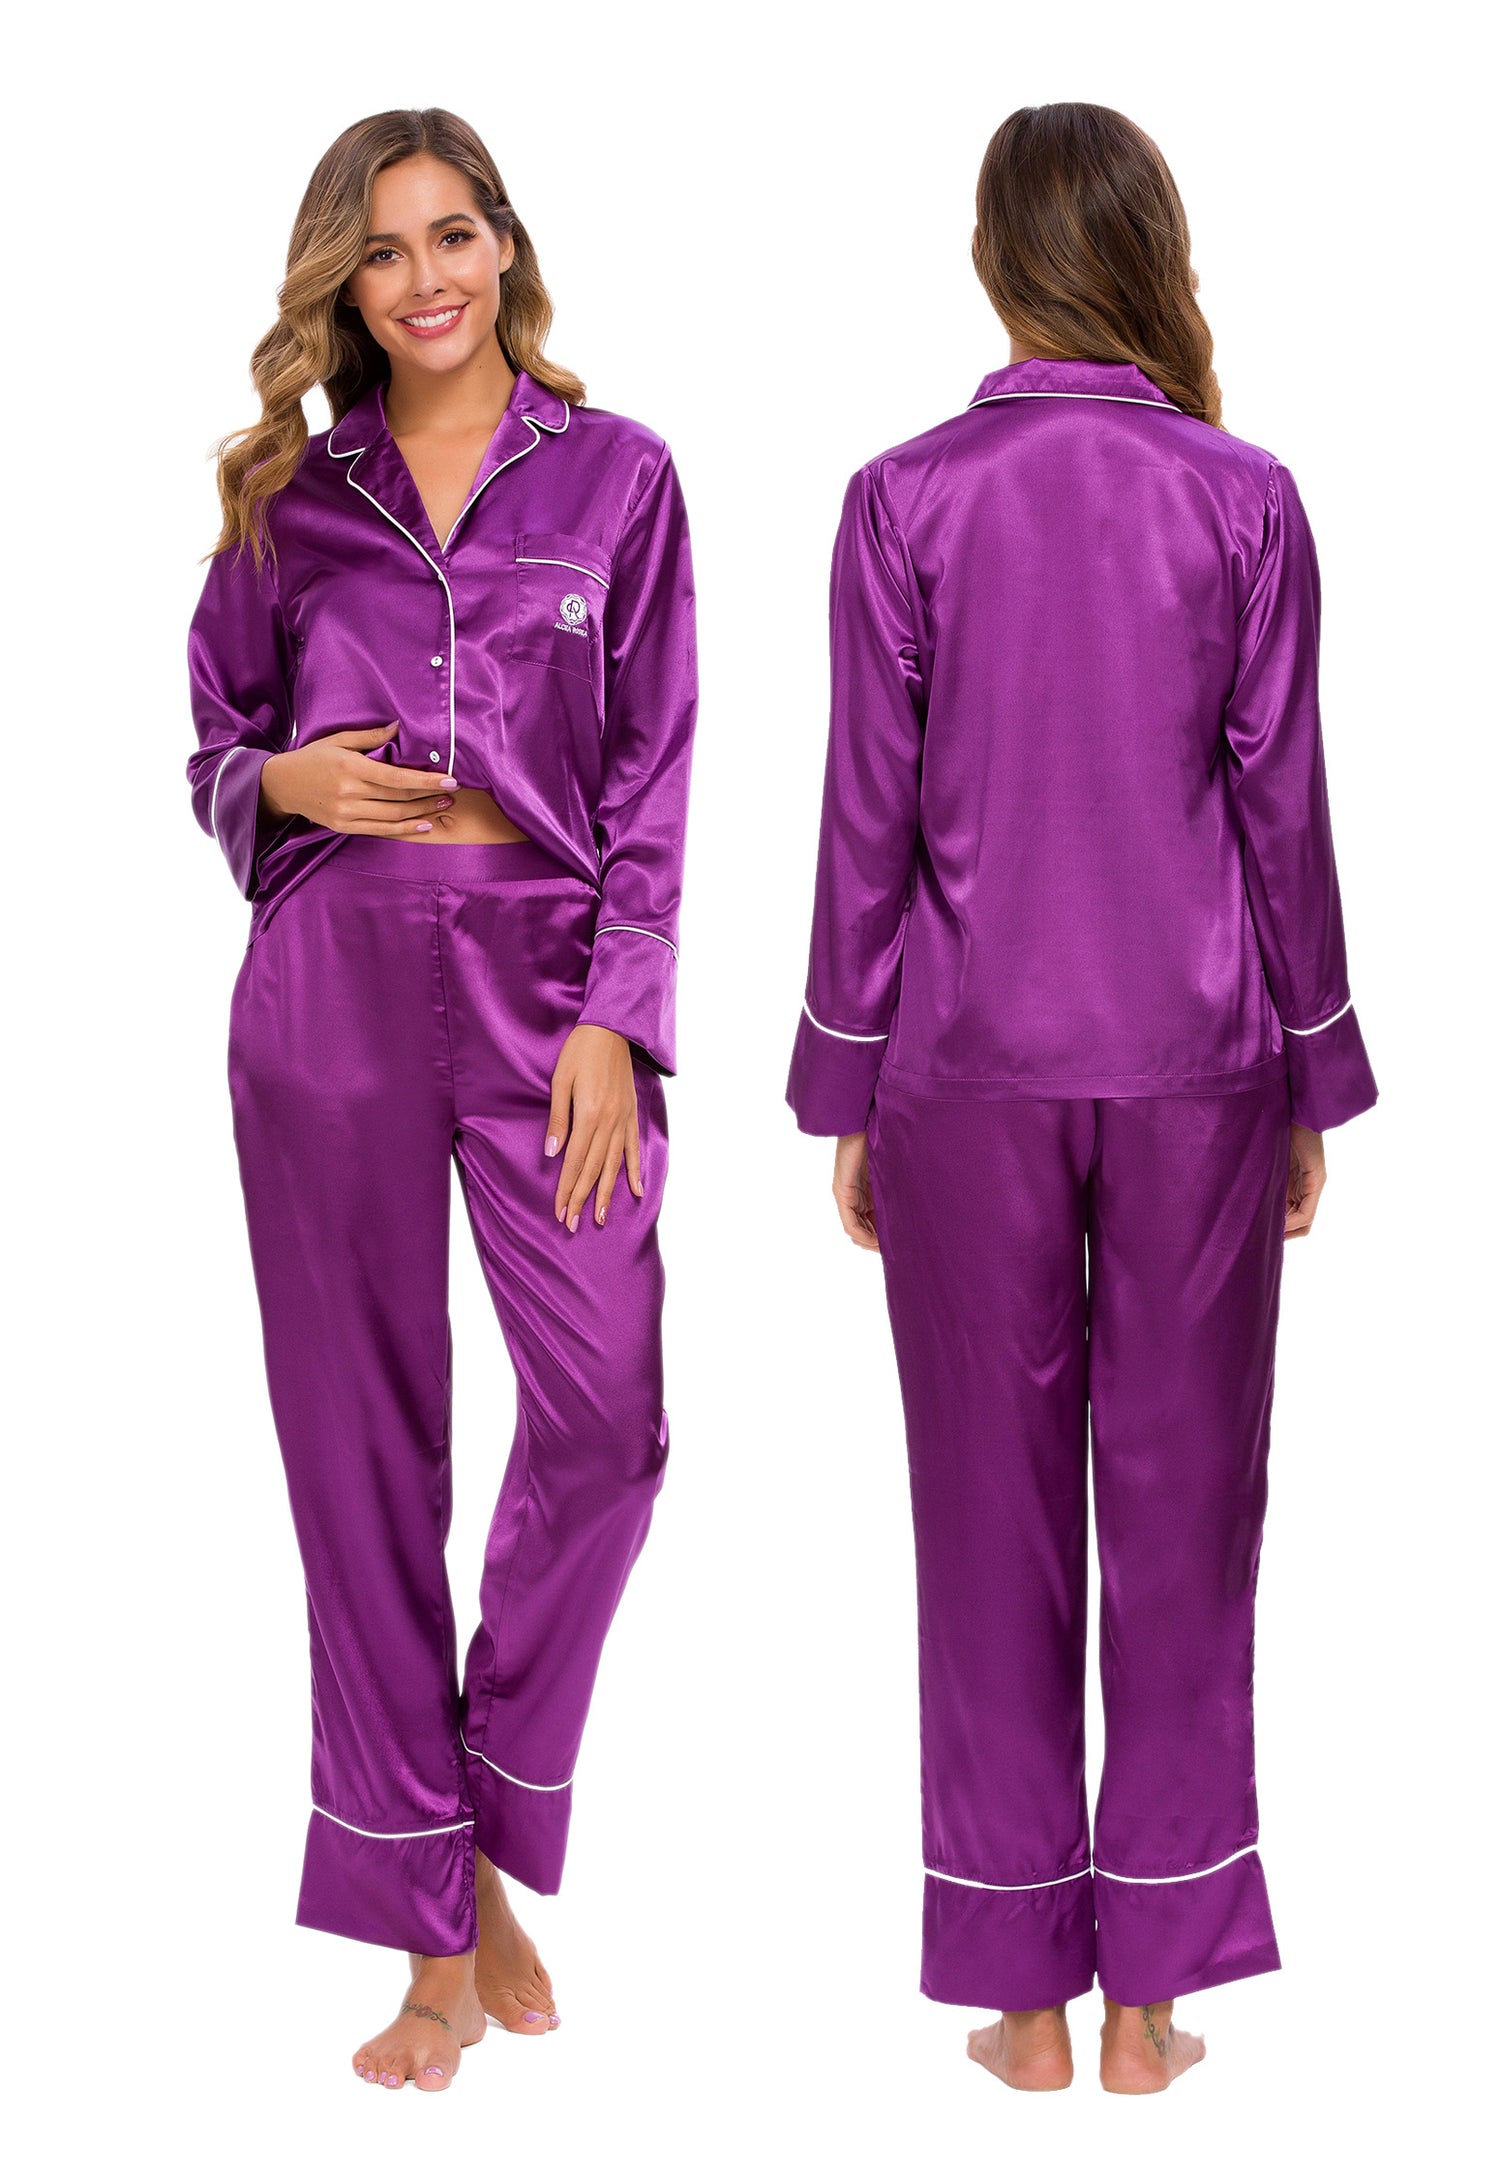 女式丝缎睡衣套装紫色